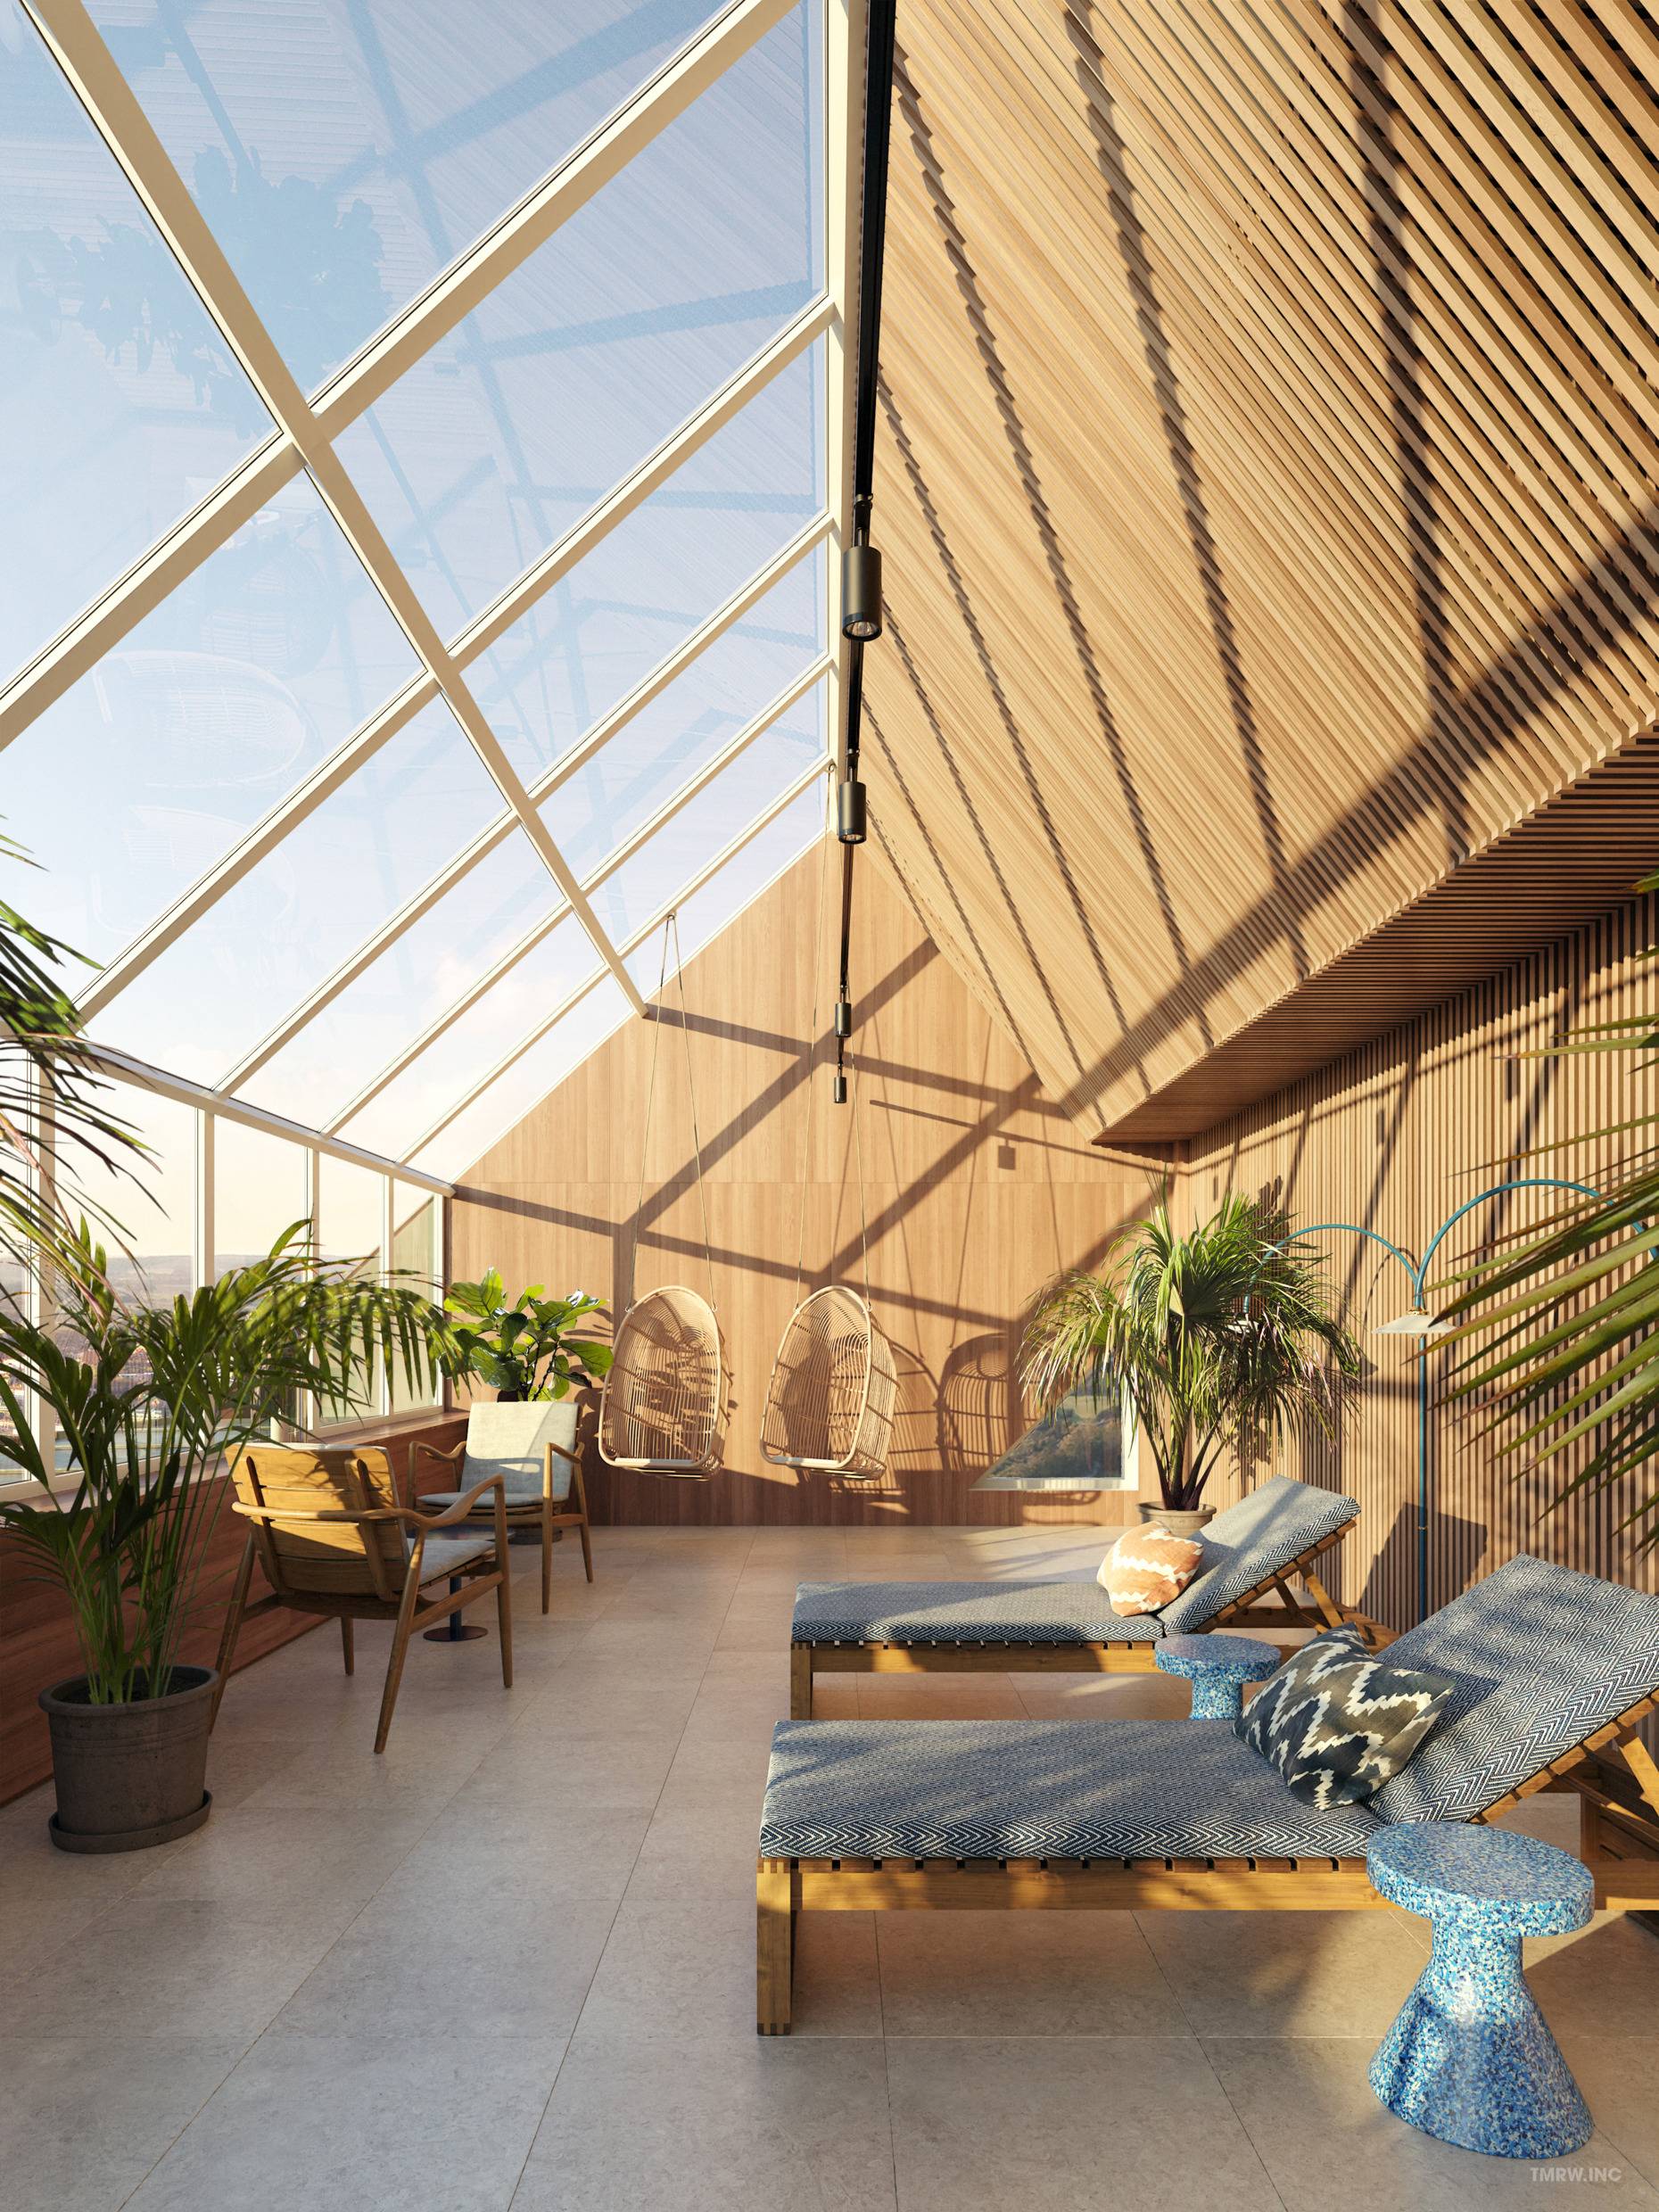 De wellnessruimte van hotel Scandic Södra Kajen met ligbedden en palmbomen. Door de grote ramen schijnt de zon naar binnen.